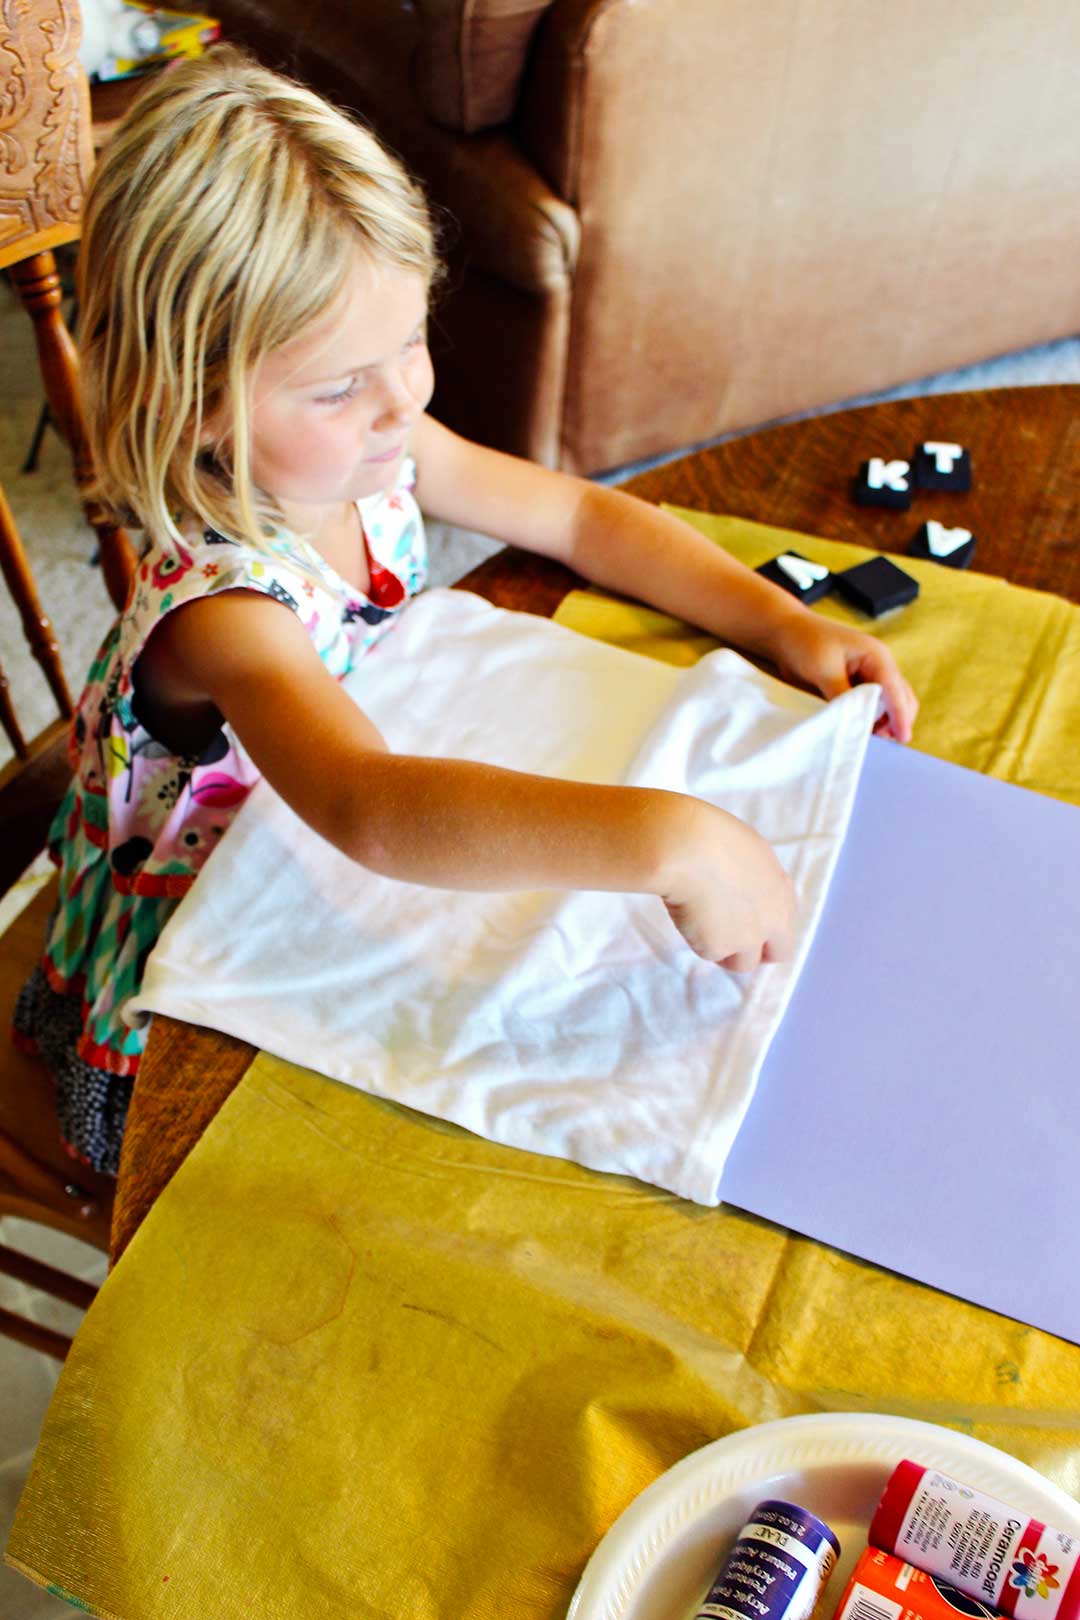 Une jeune fille blonde met du carton entre les T-shirts blancs pour éviter que la peinture ne colle ensemble une fois décorée.